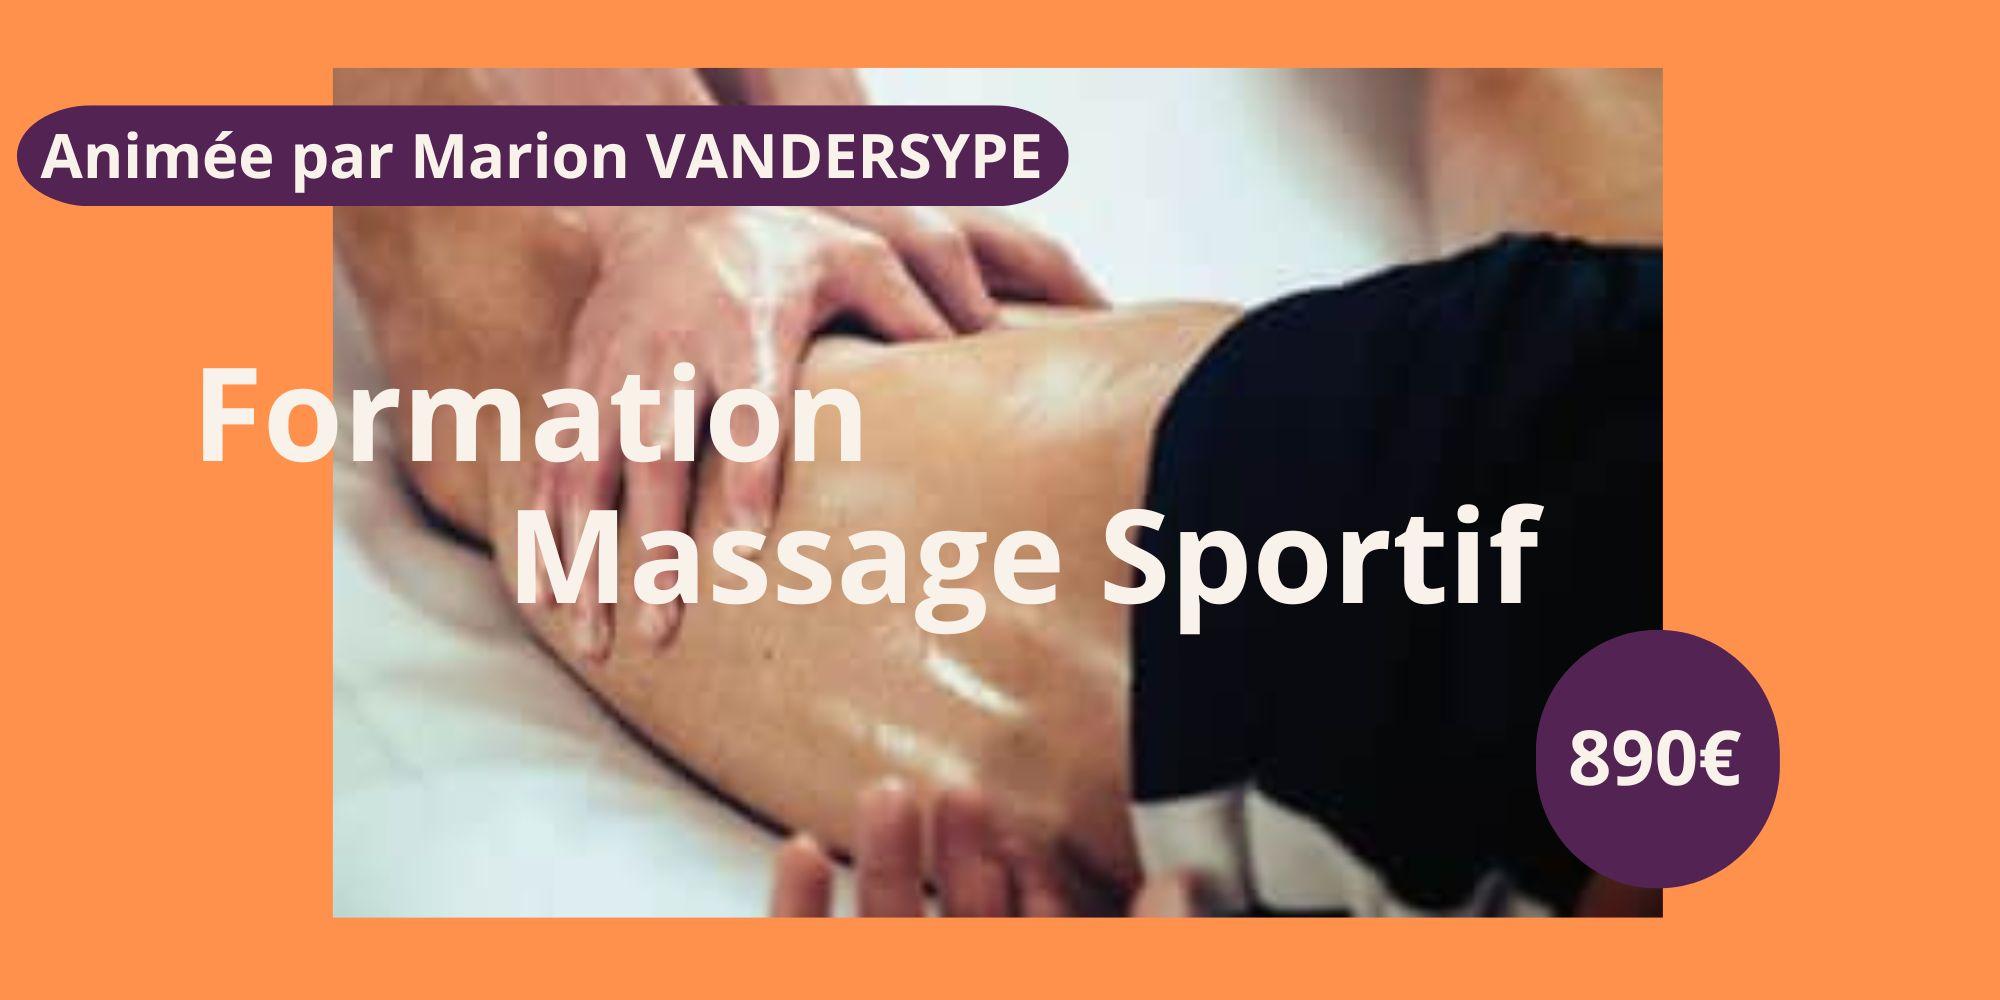 https://www.zemassage.fr/formation-massage-sportif.html